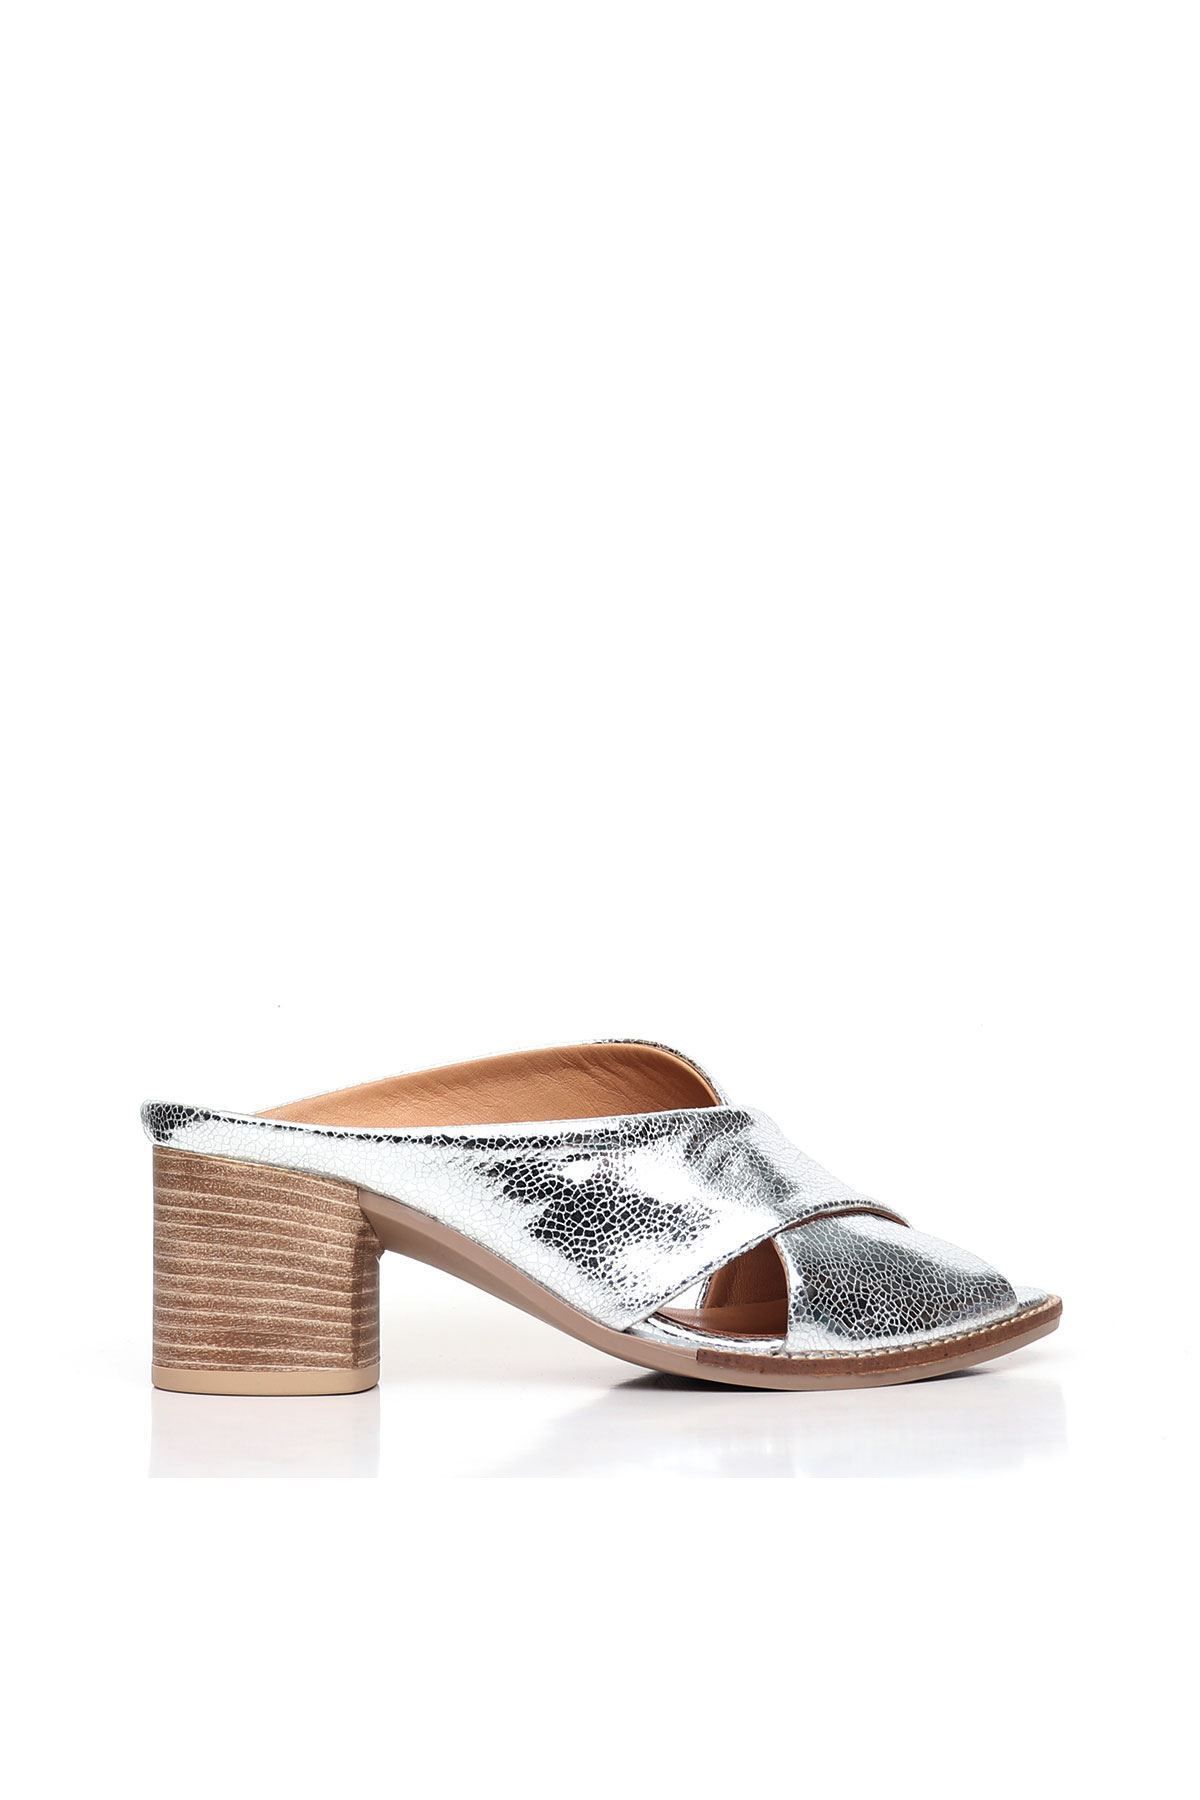 BUENO Shoes Gümüş Deri Kadın Topuklu Terlik